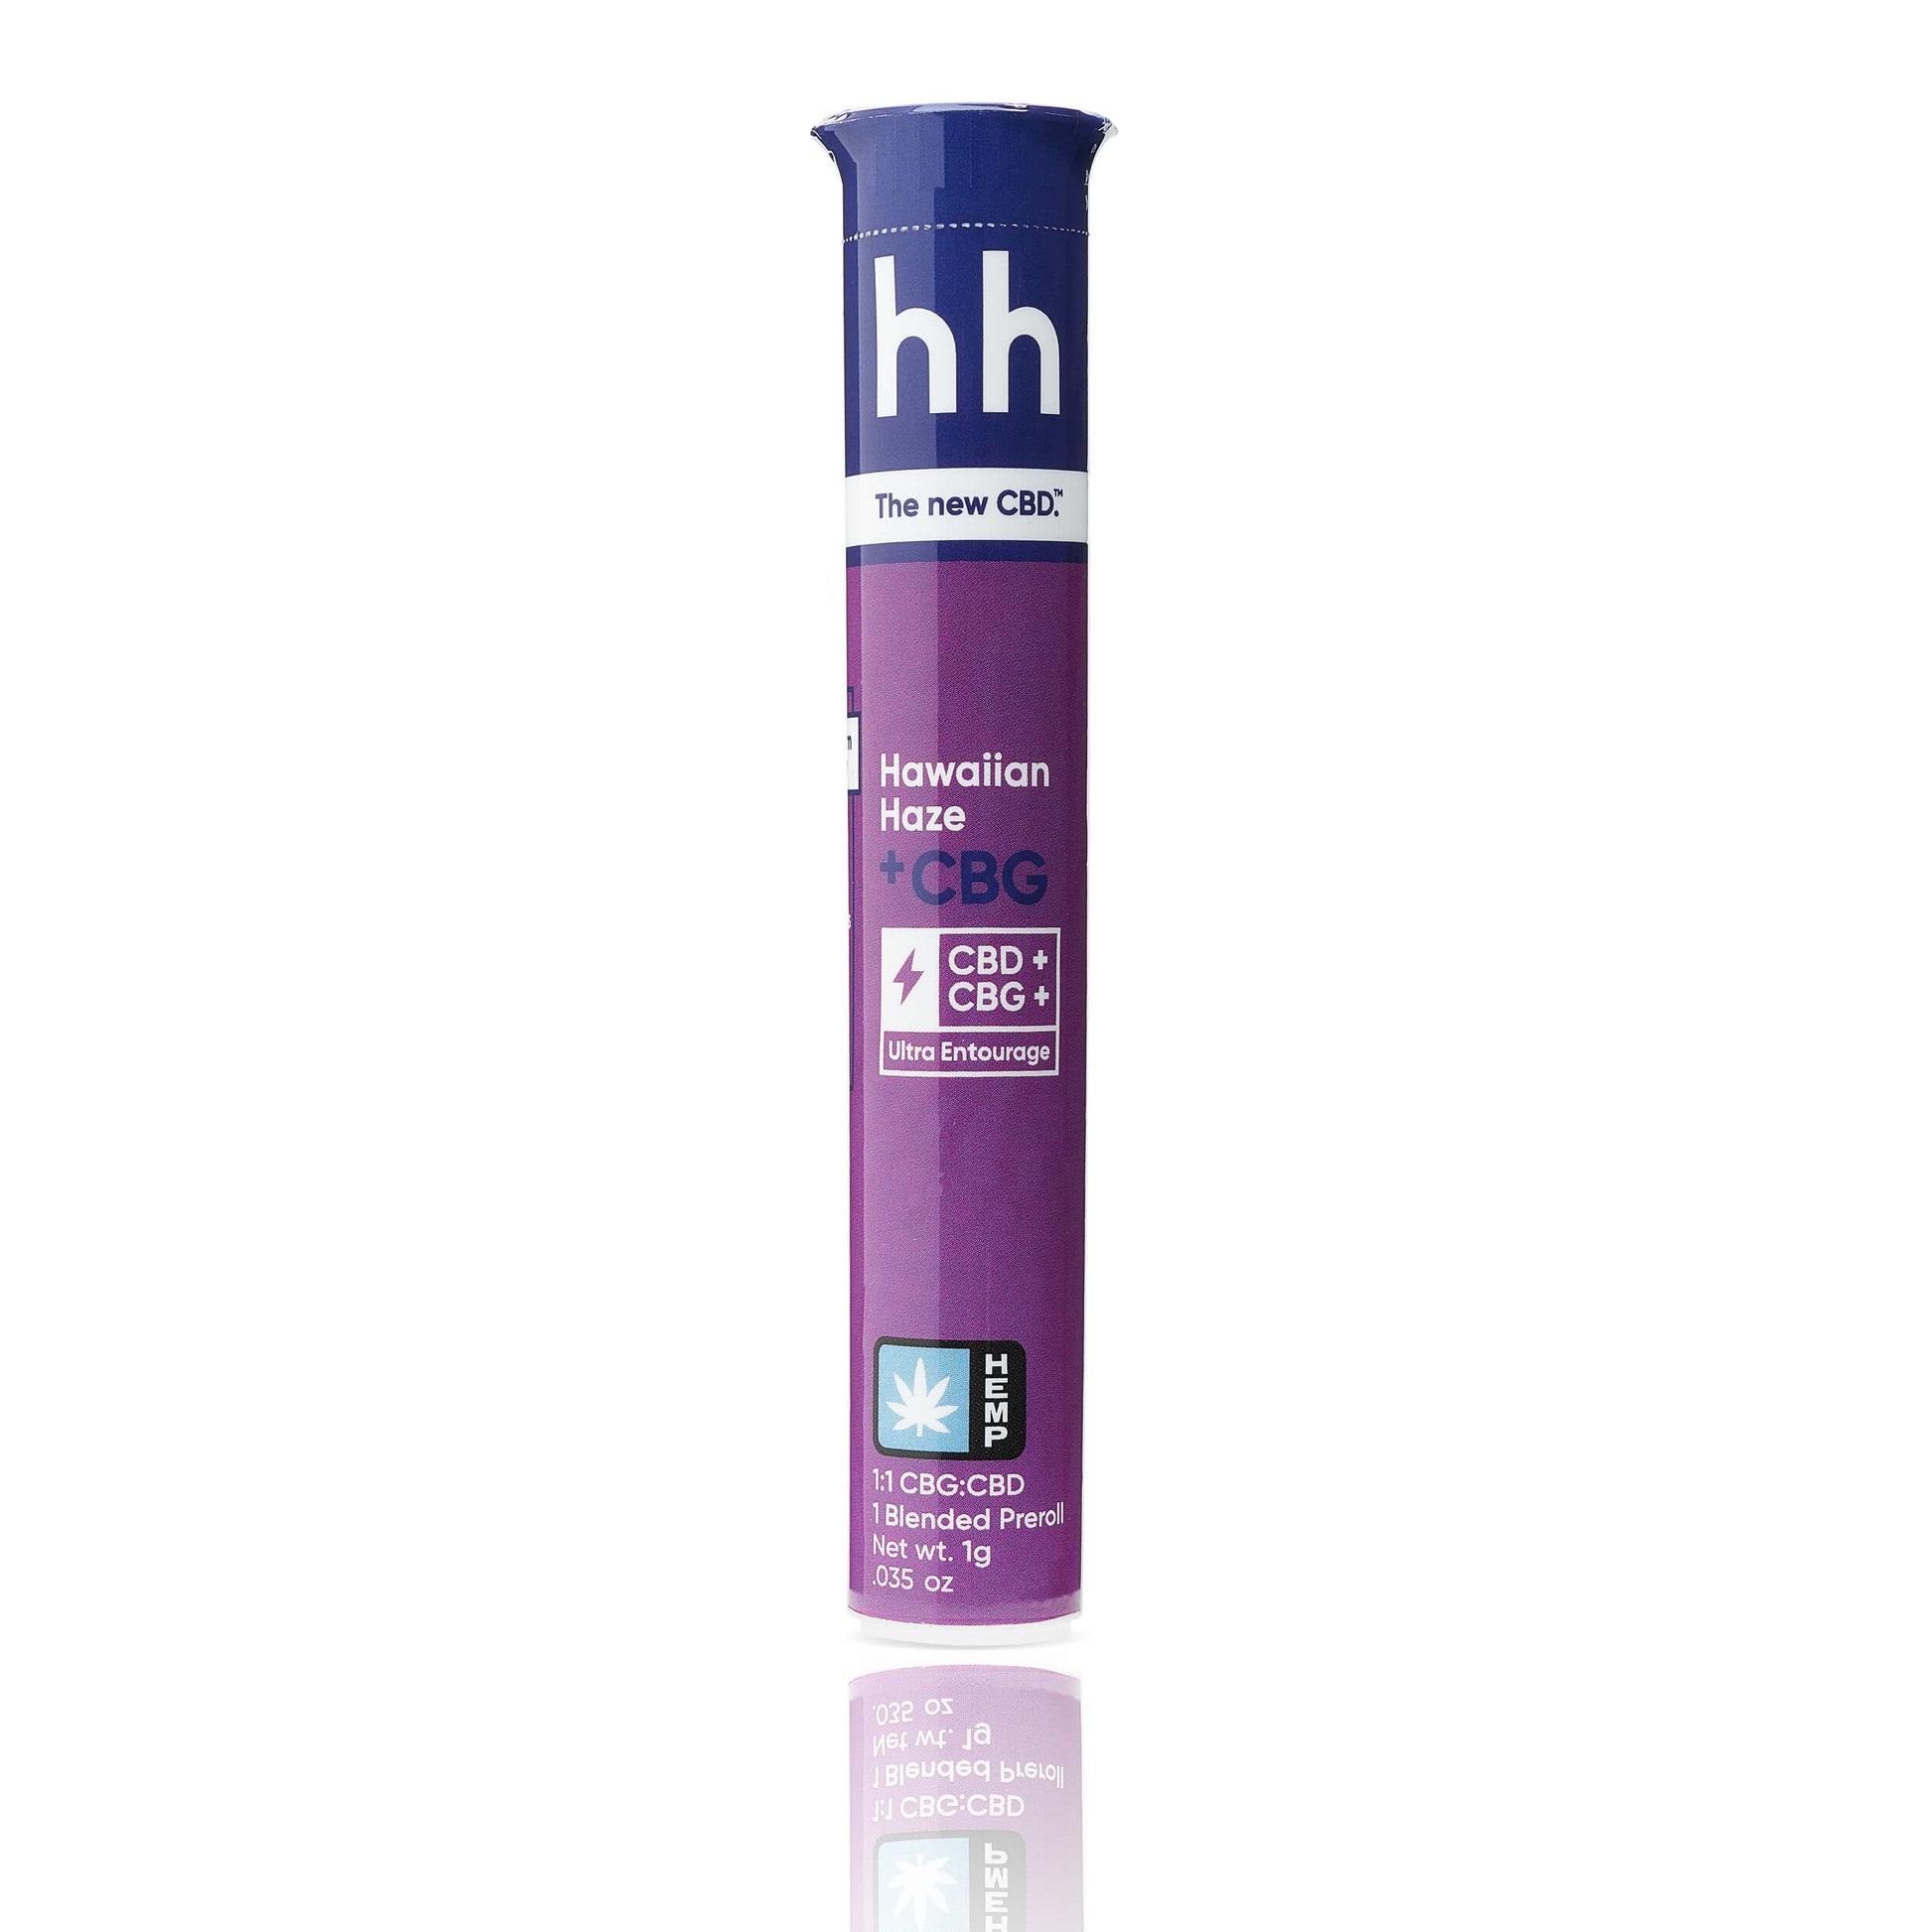 H Hemp CBD Pre-roll - 1G (a Flower) made by H Hemp sold at CBD Emporium